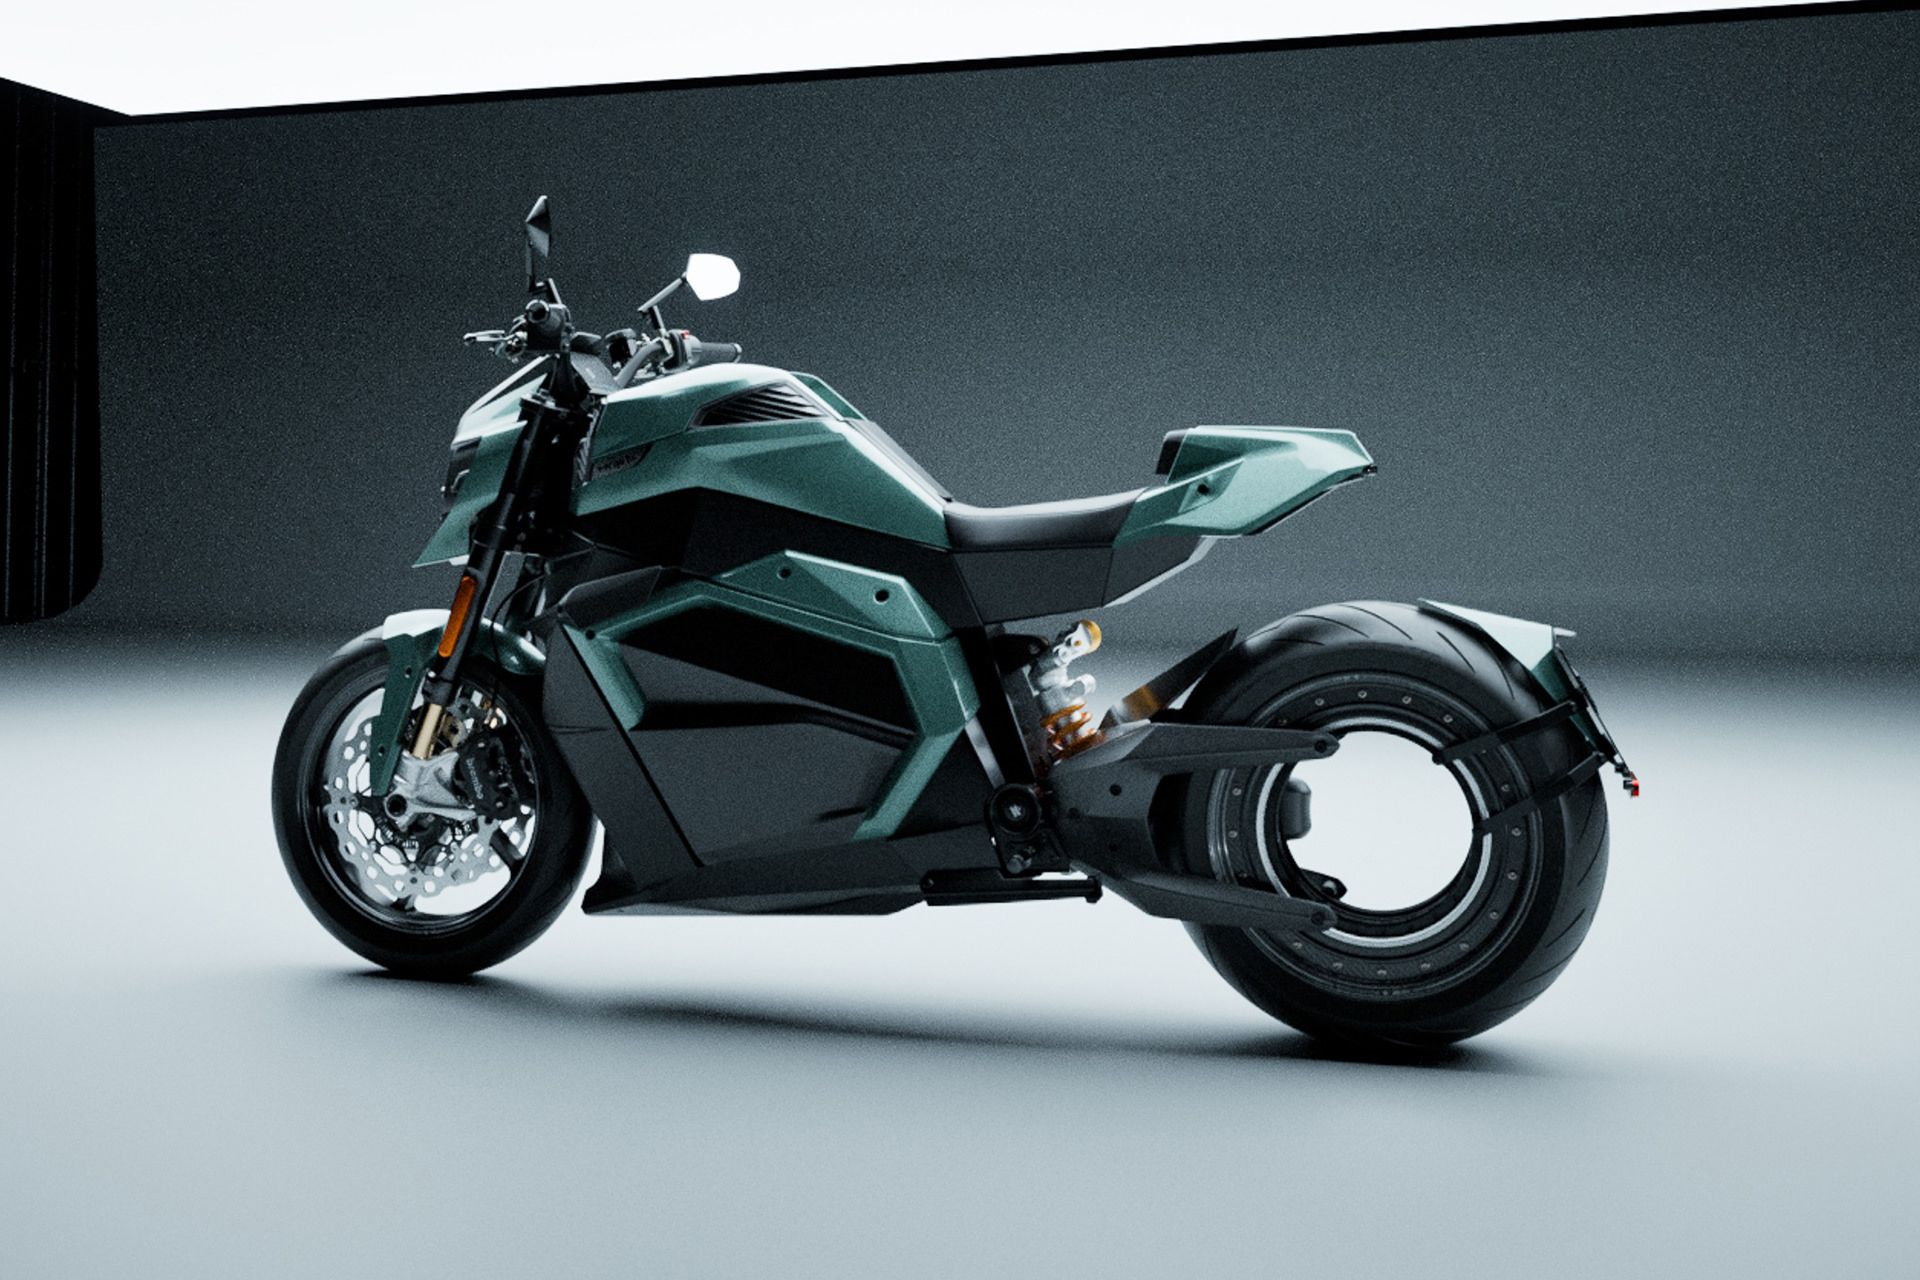 موتورسیکلت برقی ورج ts ultra سبز رنگ در اتاق